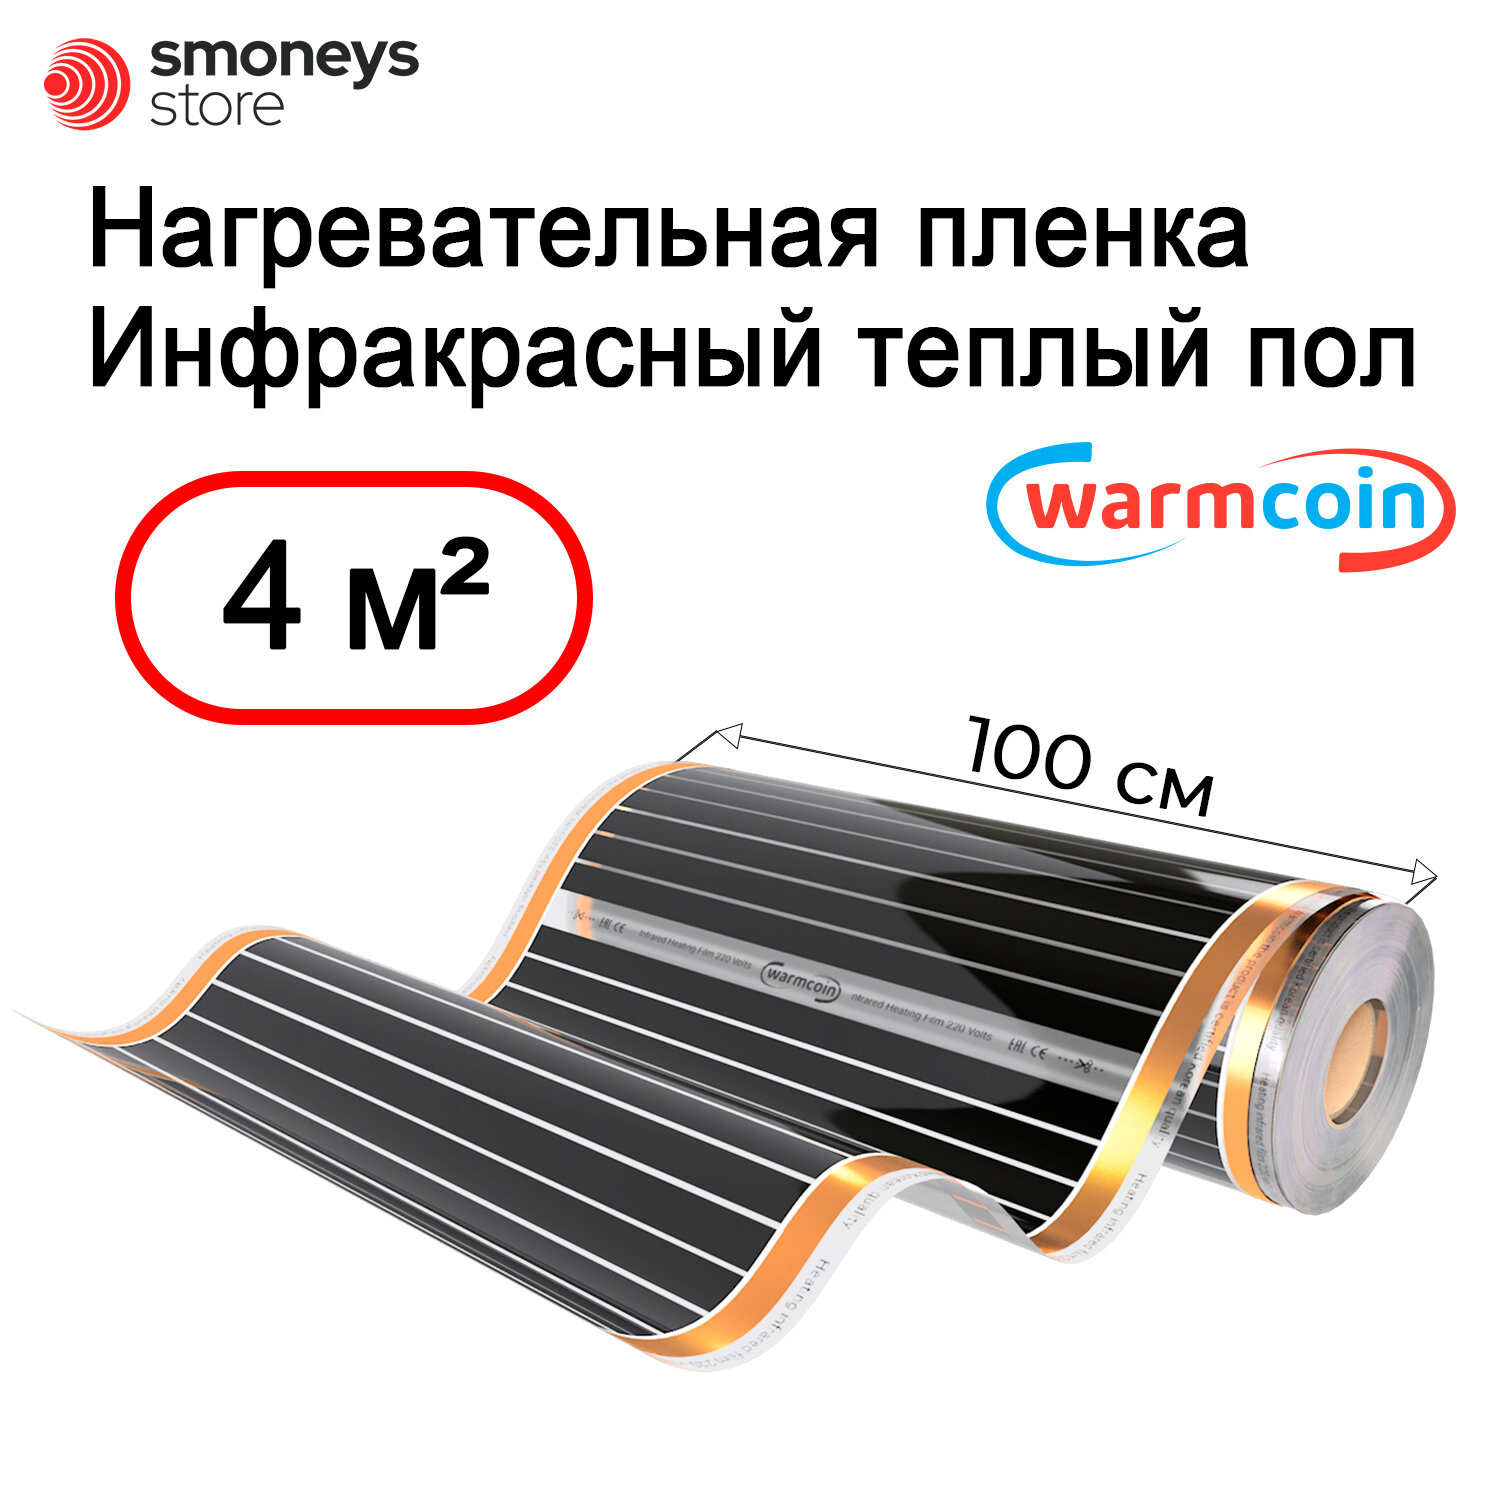 Теплый пол Warmcoin инфракрасный 100см 220Вт/м. кв. под ламинат, 4 м. п